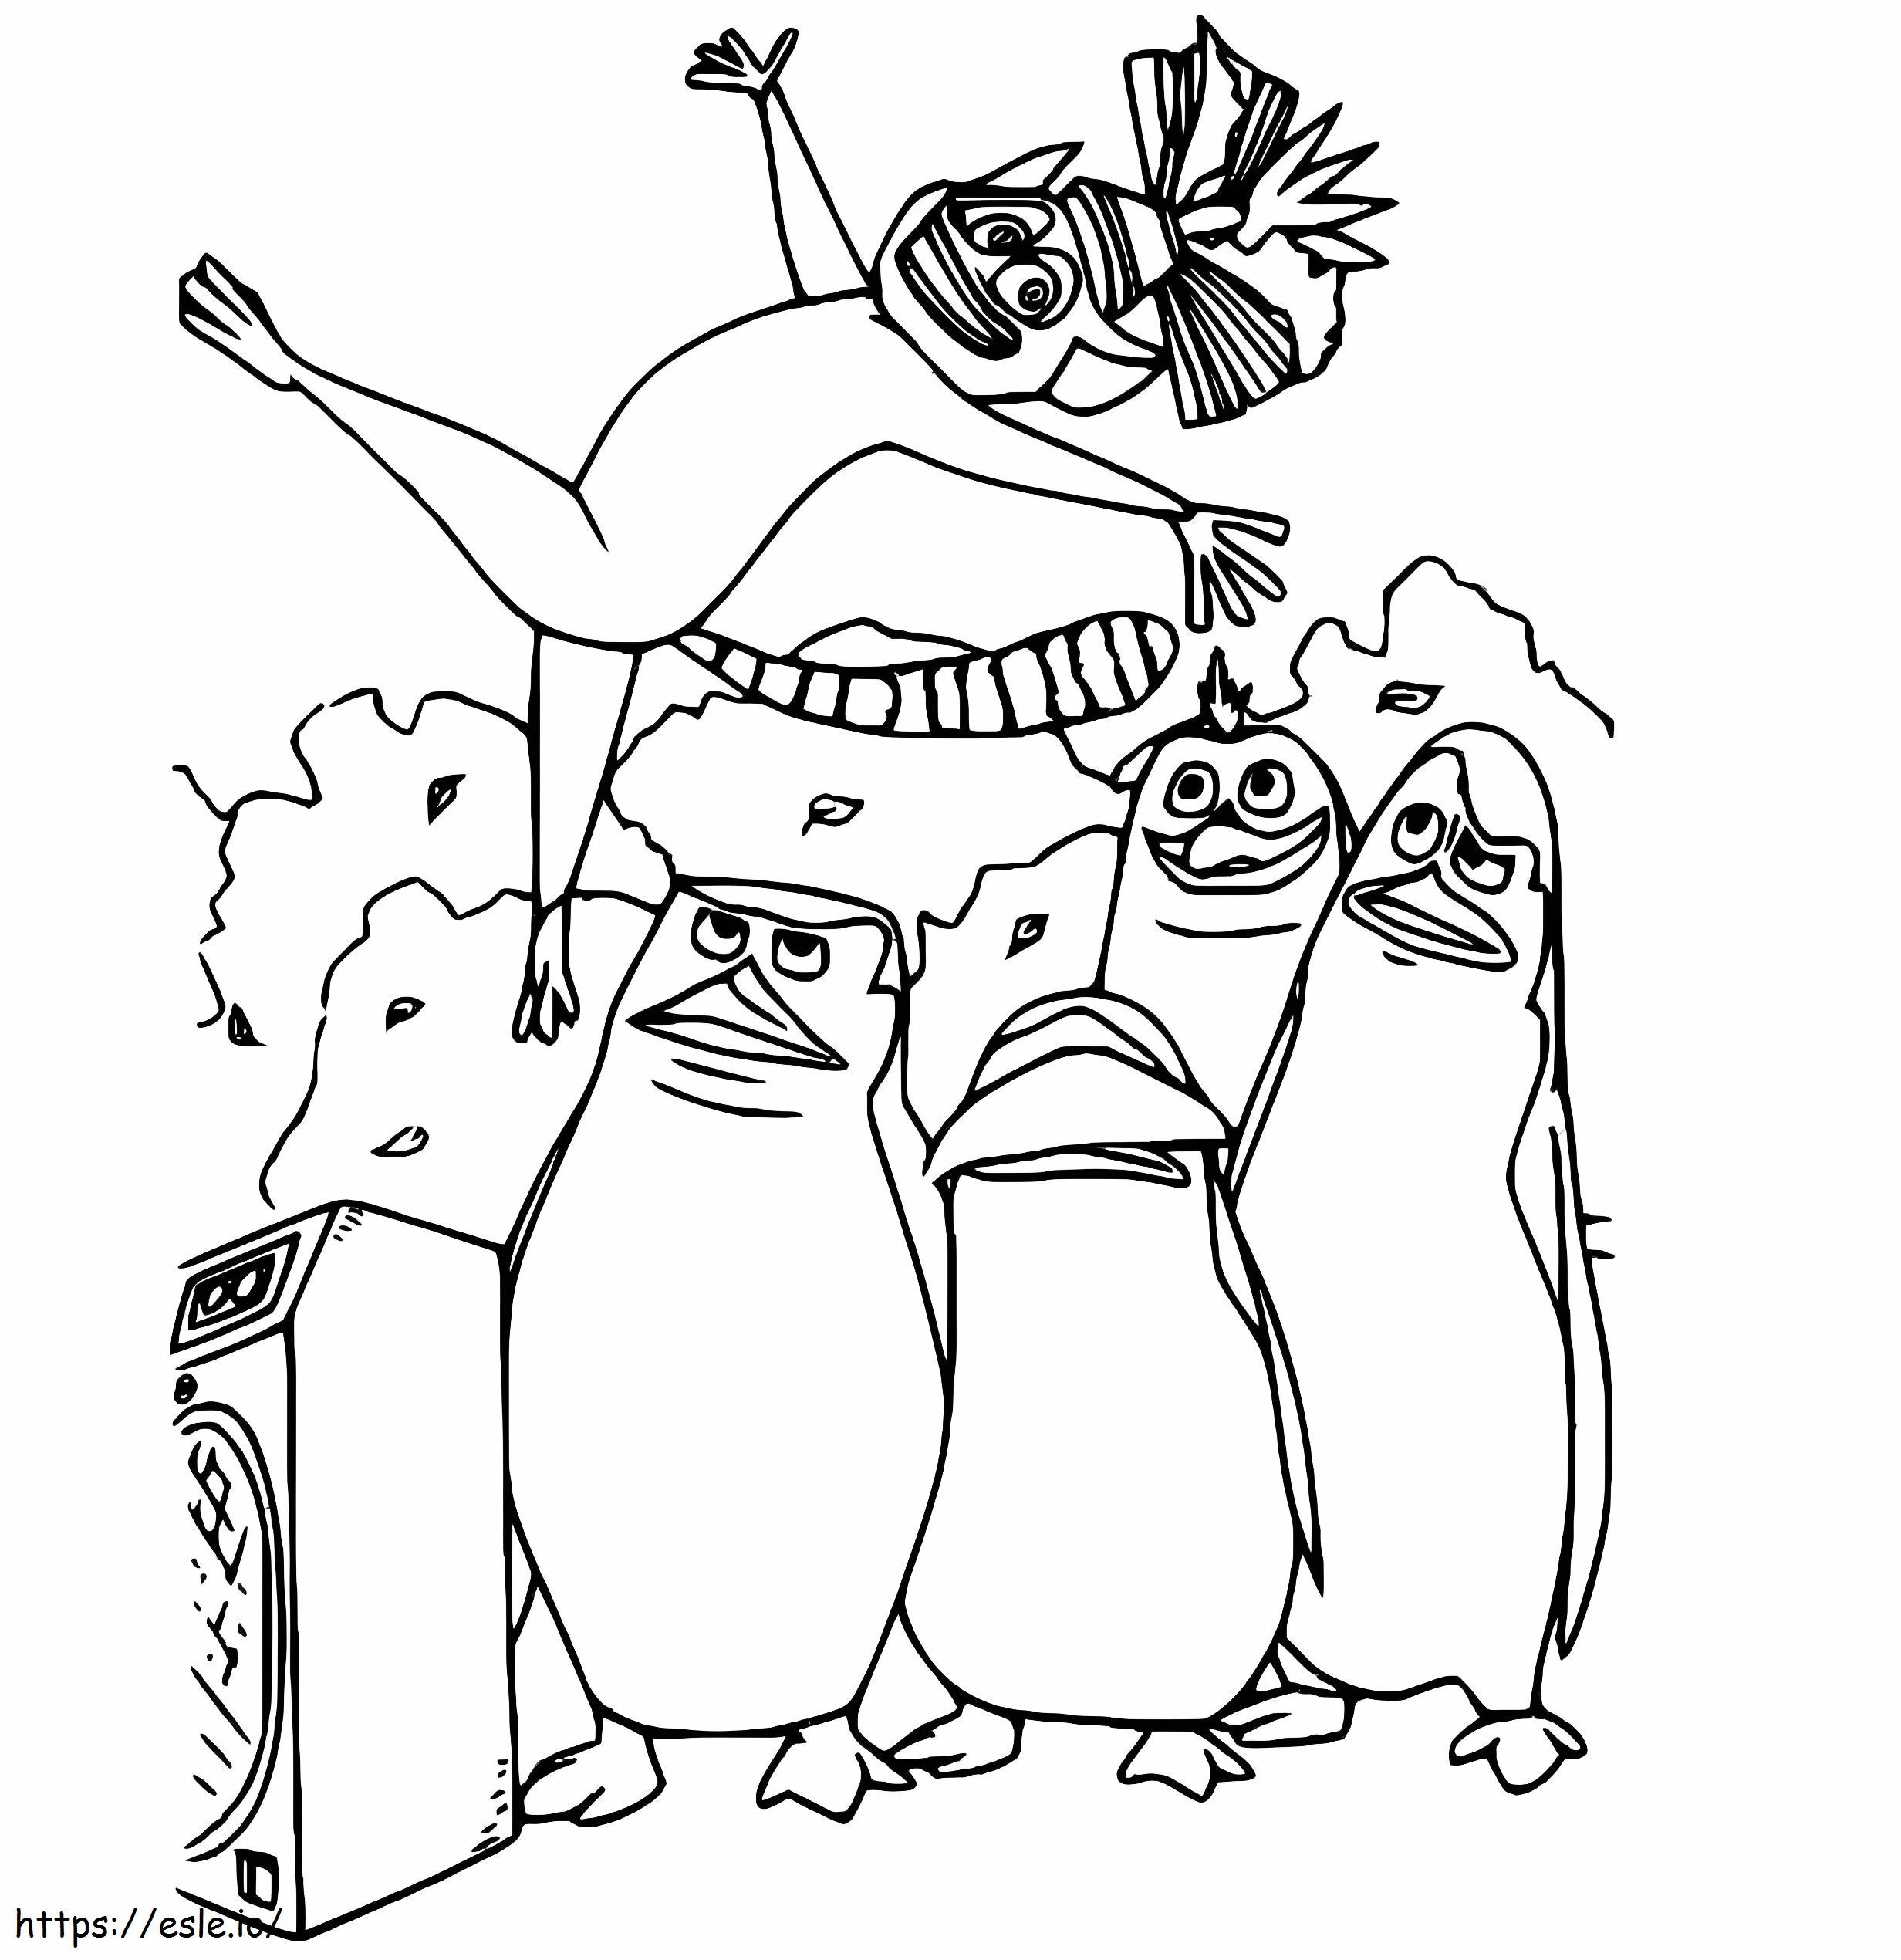 Pinguins de Madagascar para impressão grátis para colorir